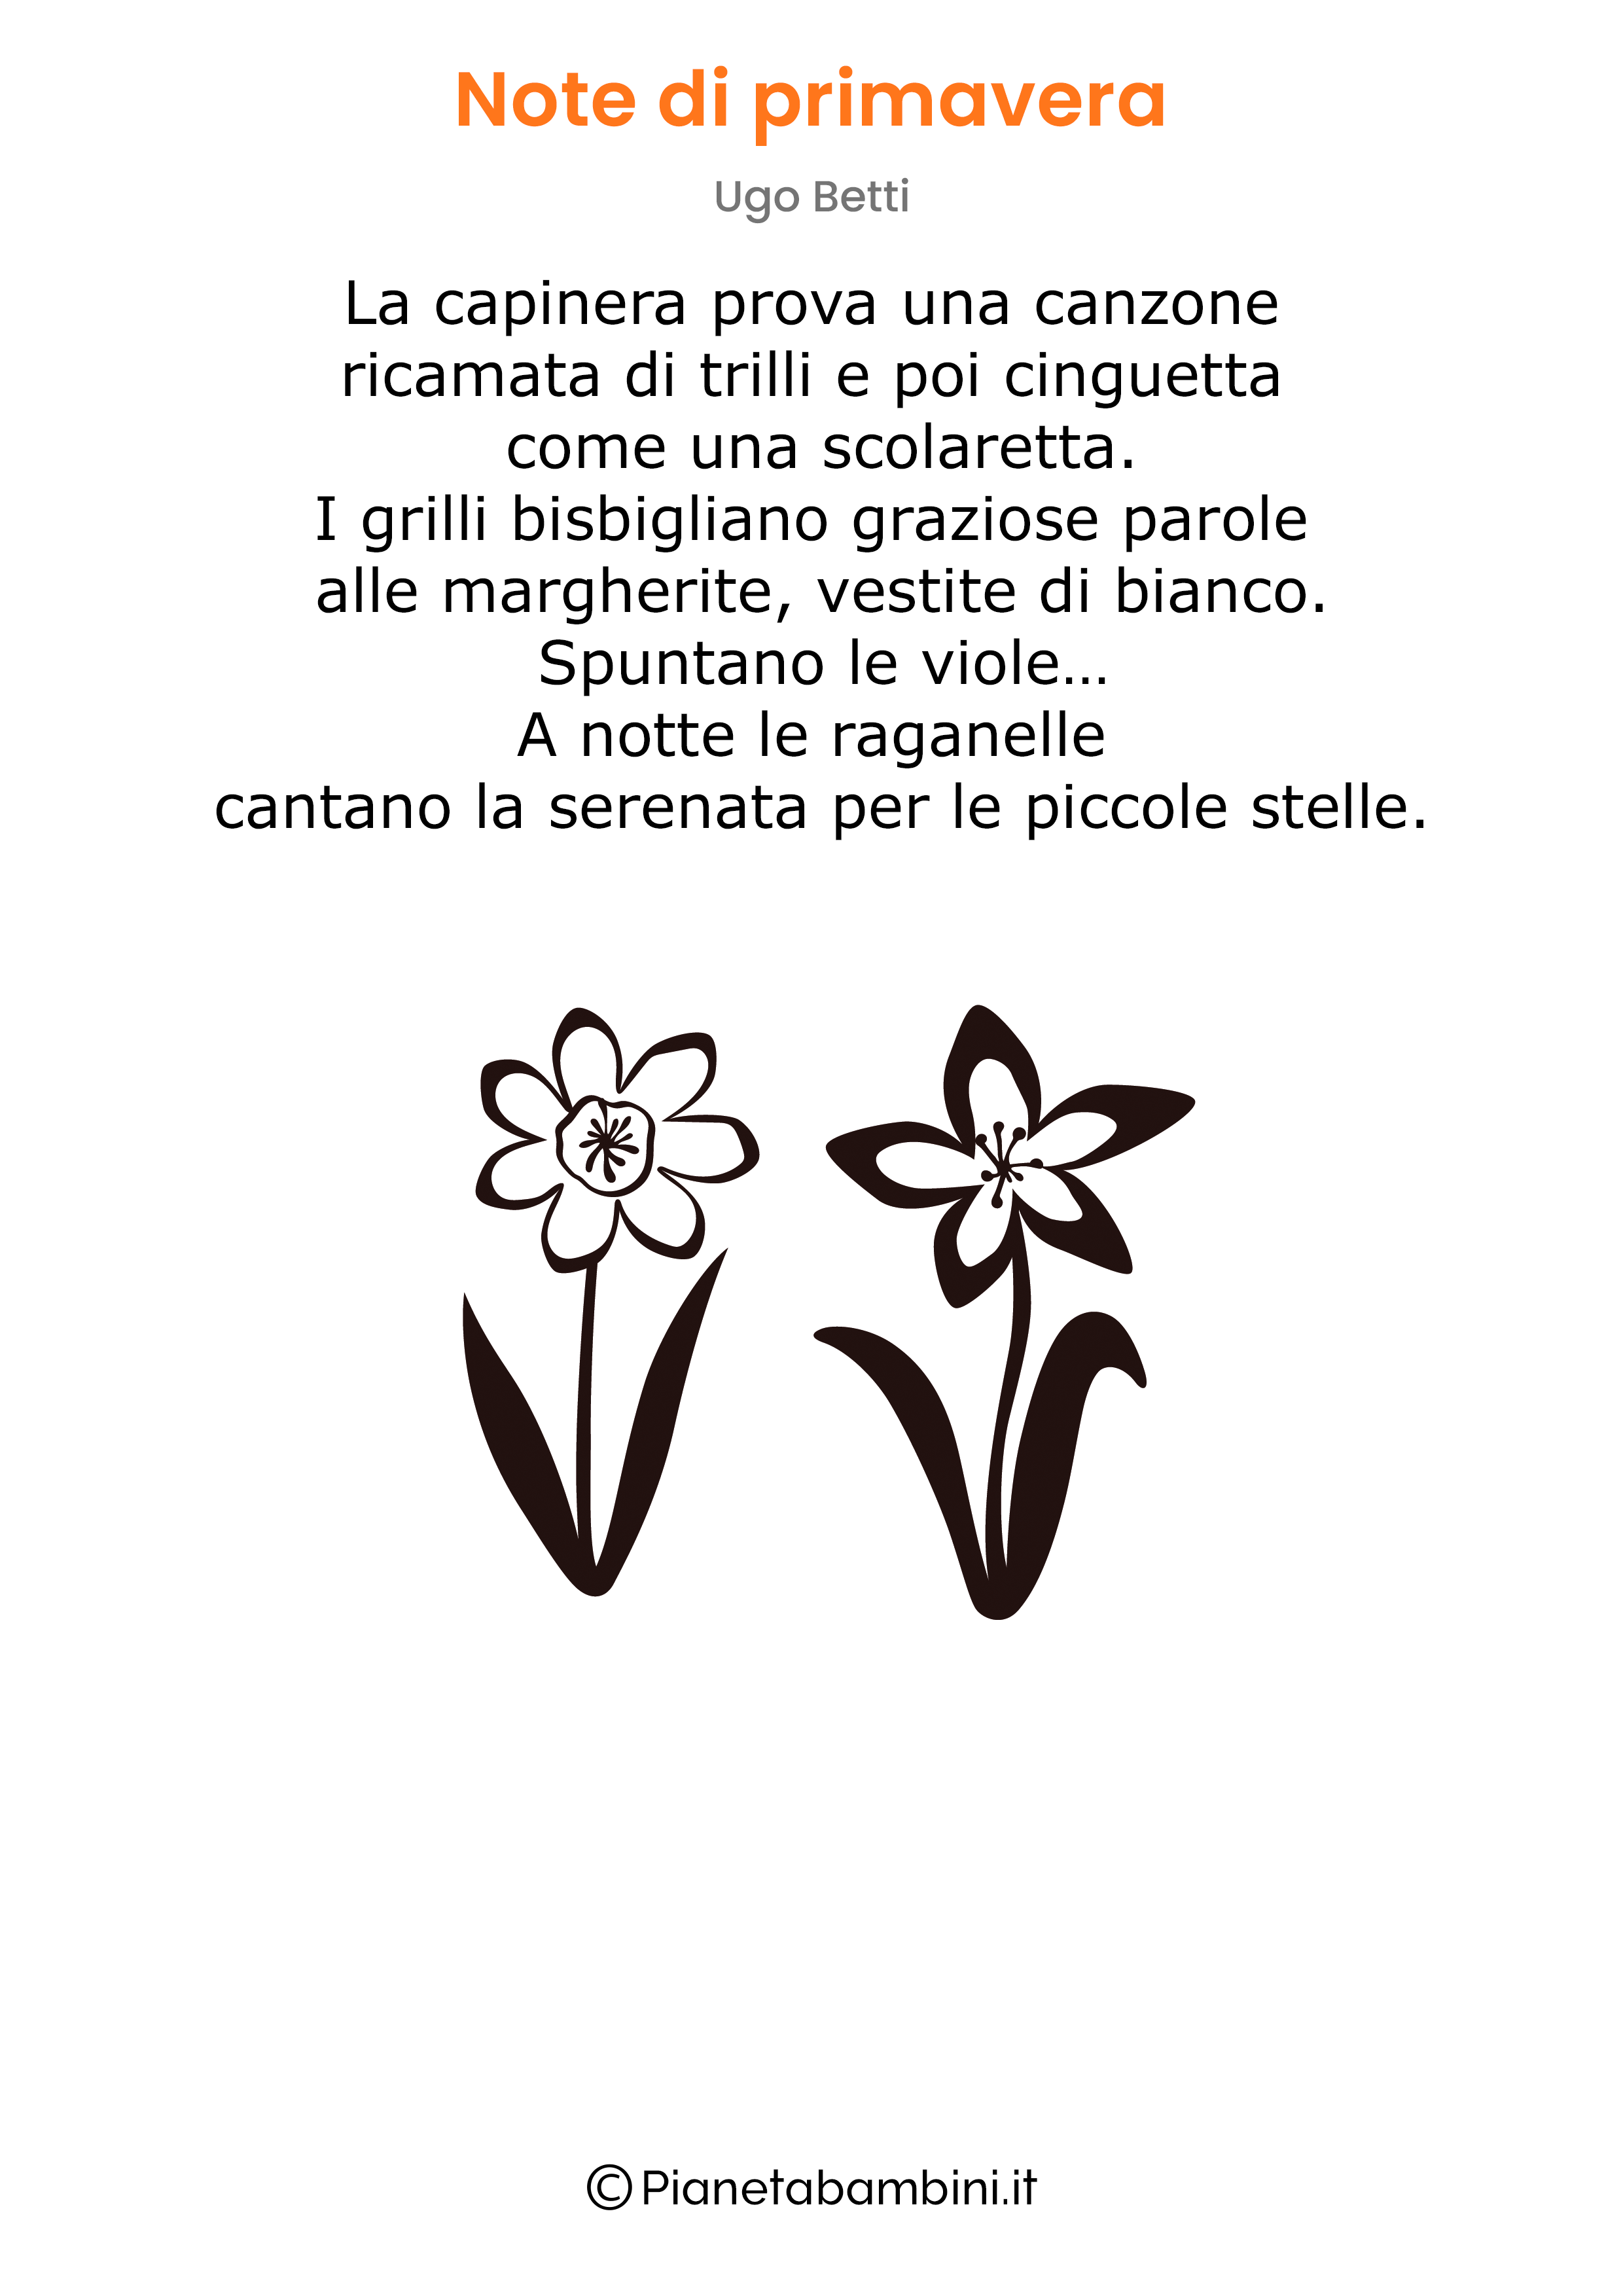 Poesia Ugo Betti Note di primavera da stampare